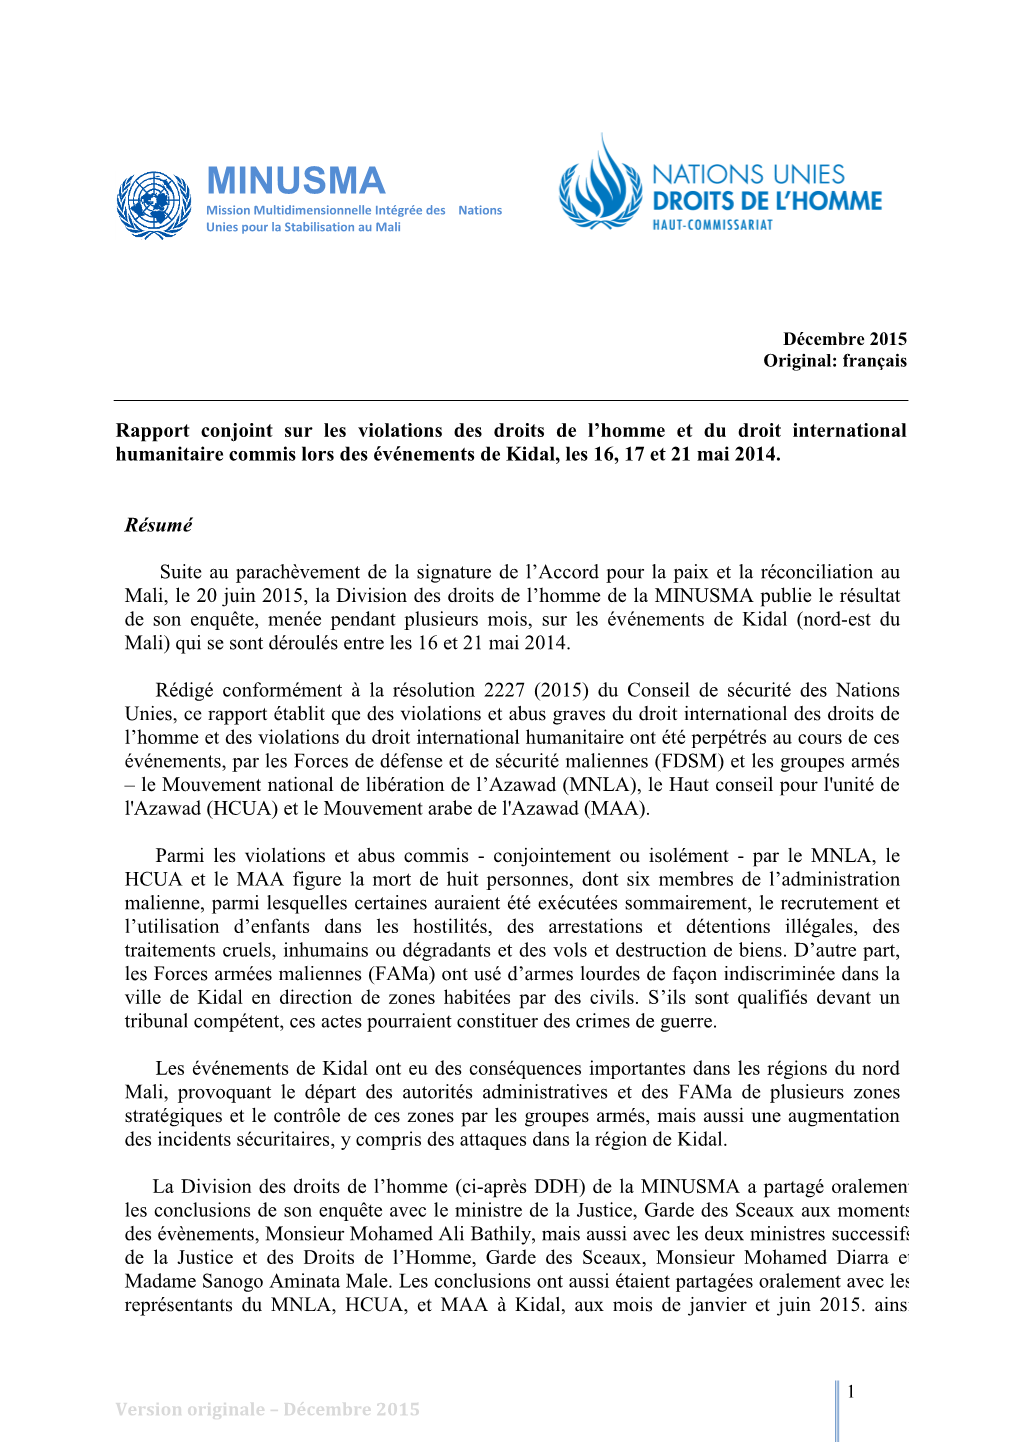 MINUSMA Mission Multidimensionnelle Intégrée Des Nations Unies Pour La Stabilisation Au Mali